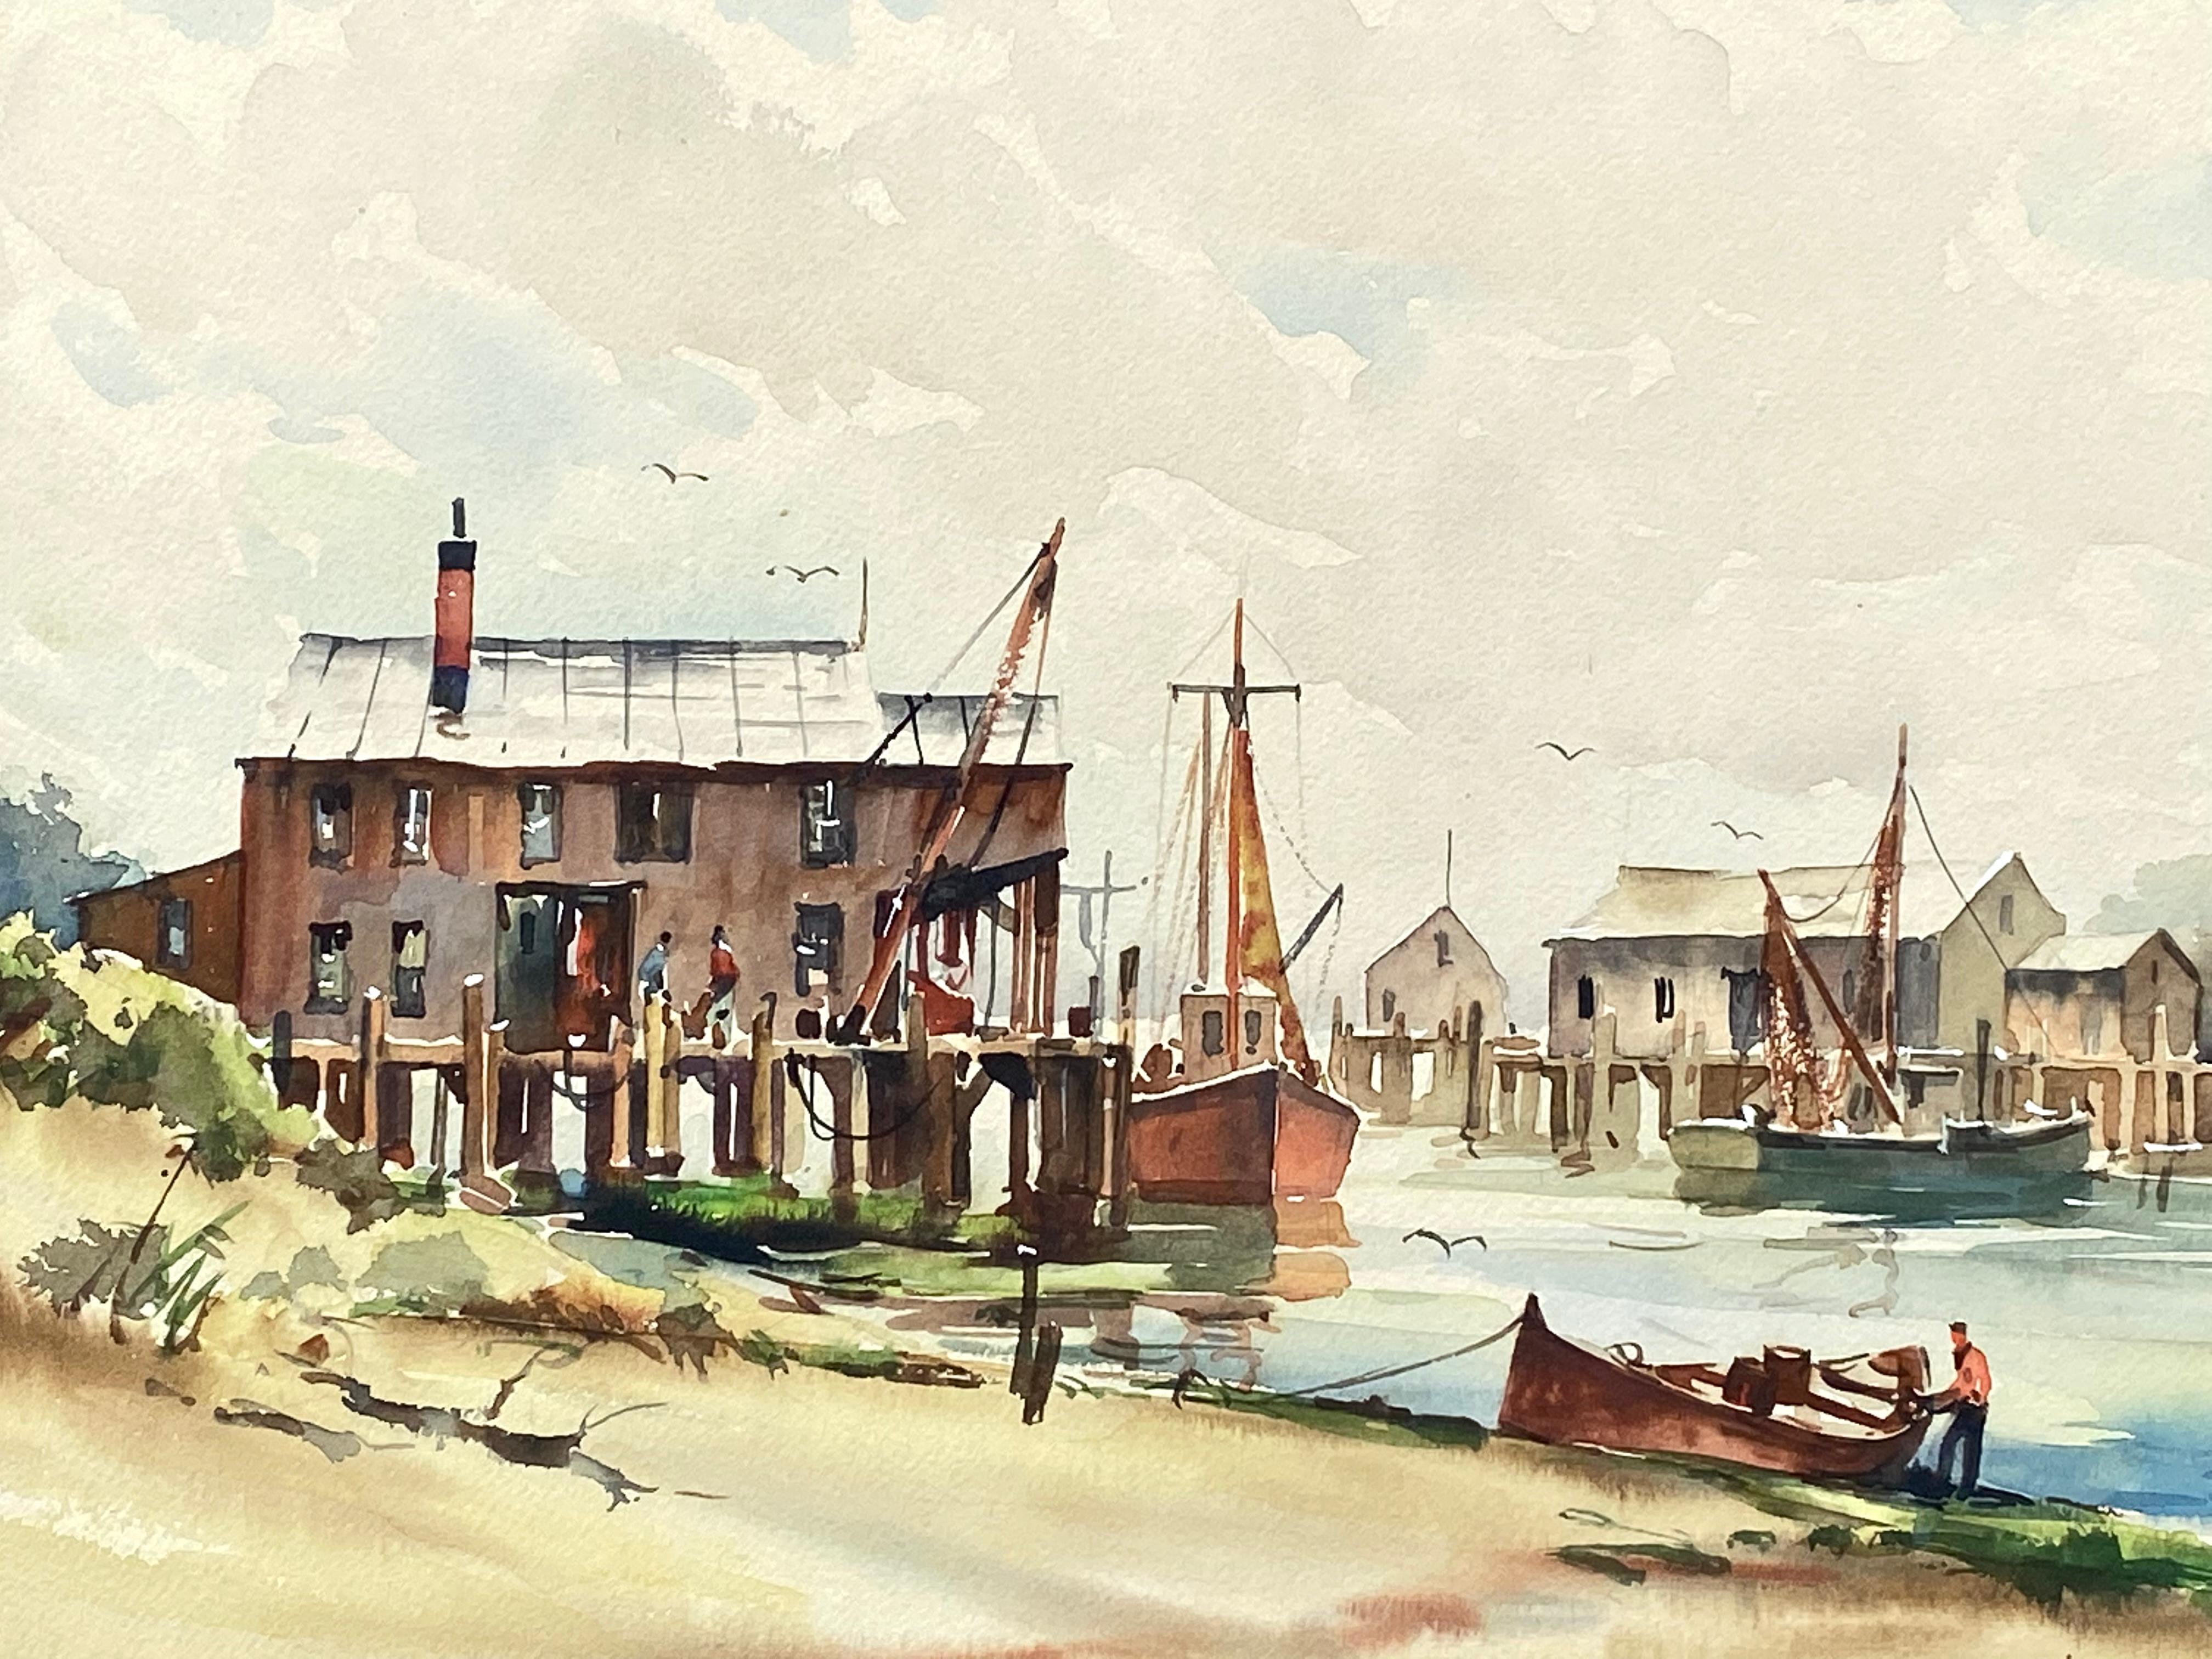 Cape Cod-Fisch Docks (Post-Impressionismus), Art, von John Cuthbert Hare